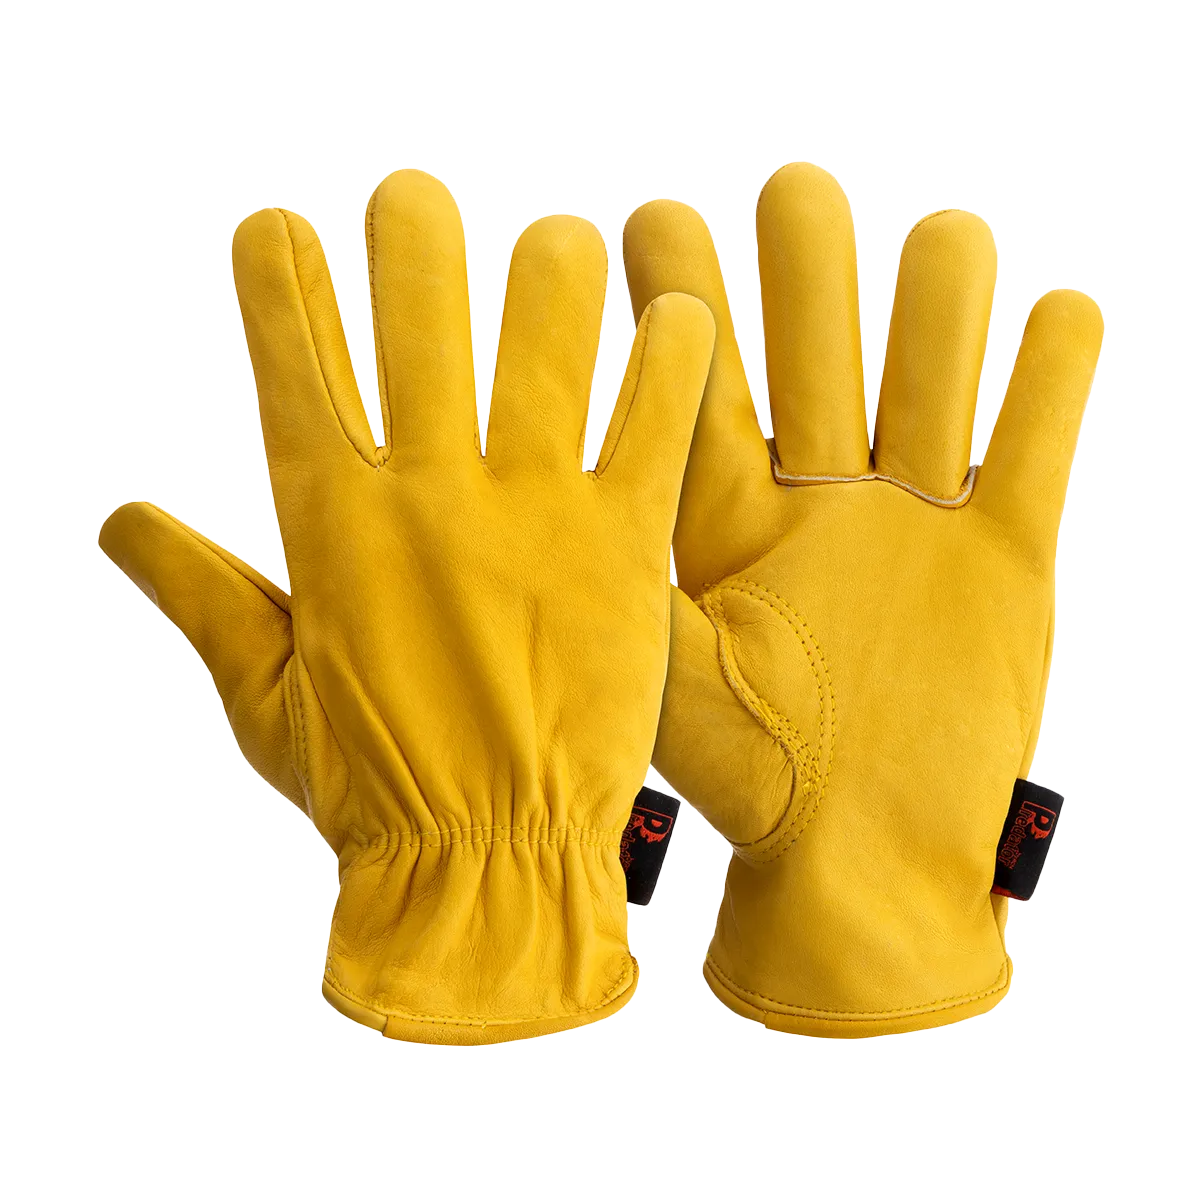 PRED4-16 Pair Safety Gloves